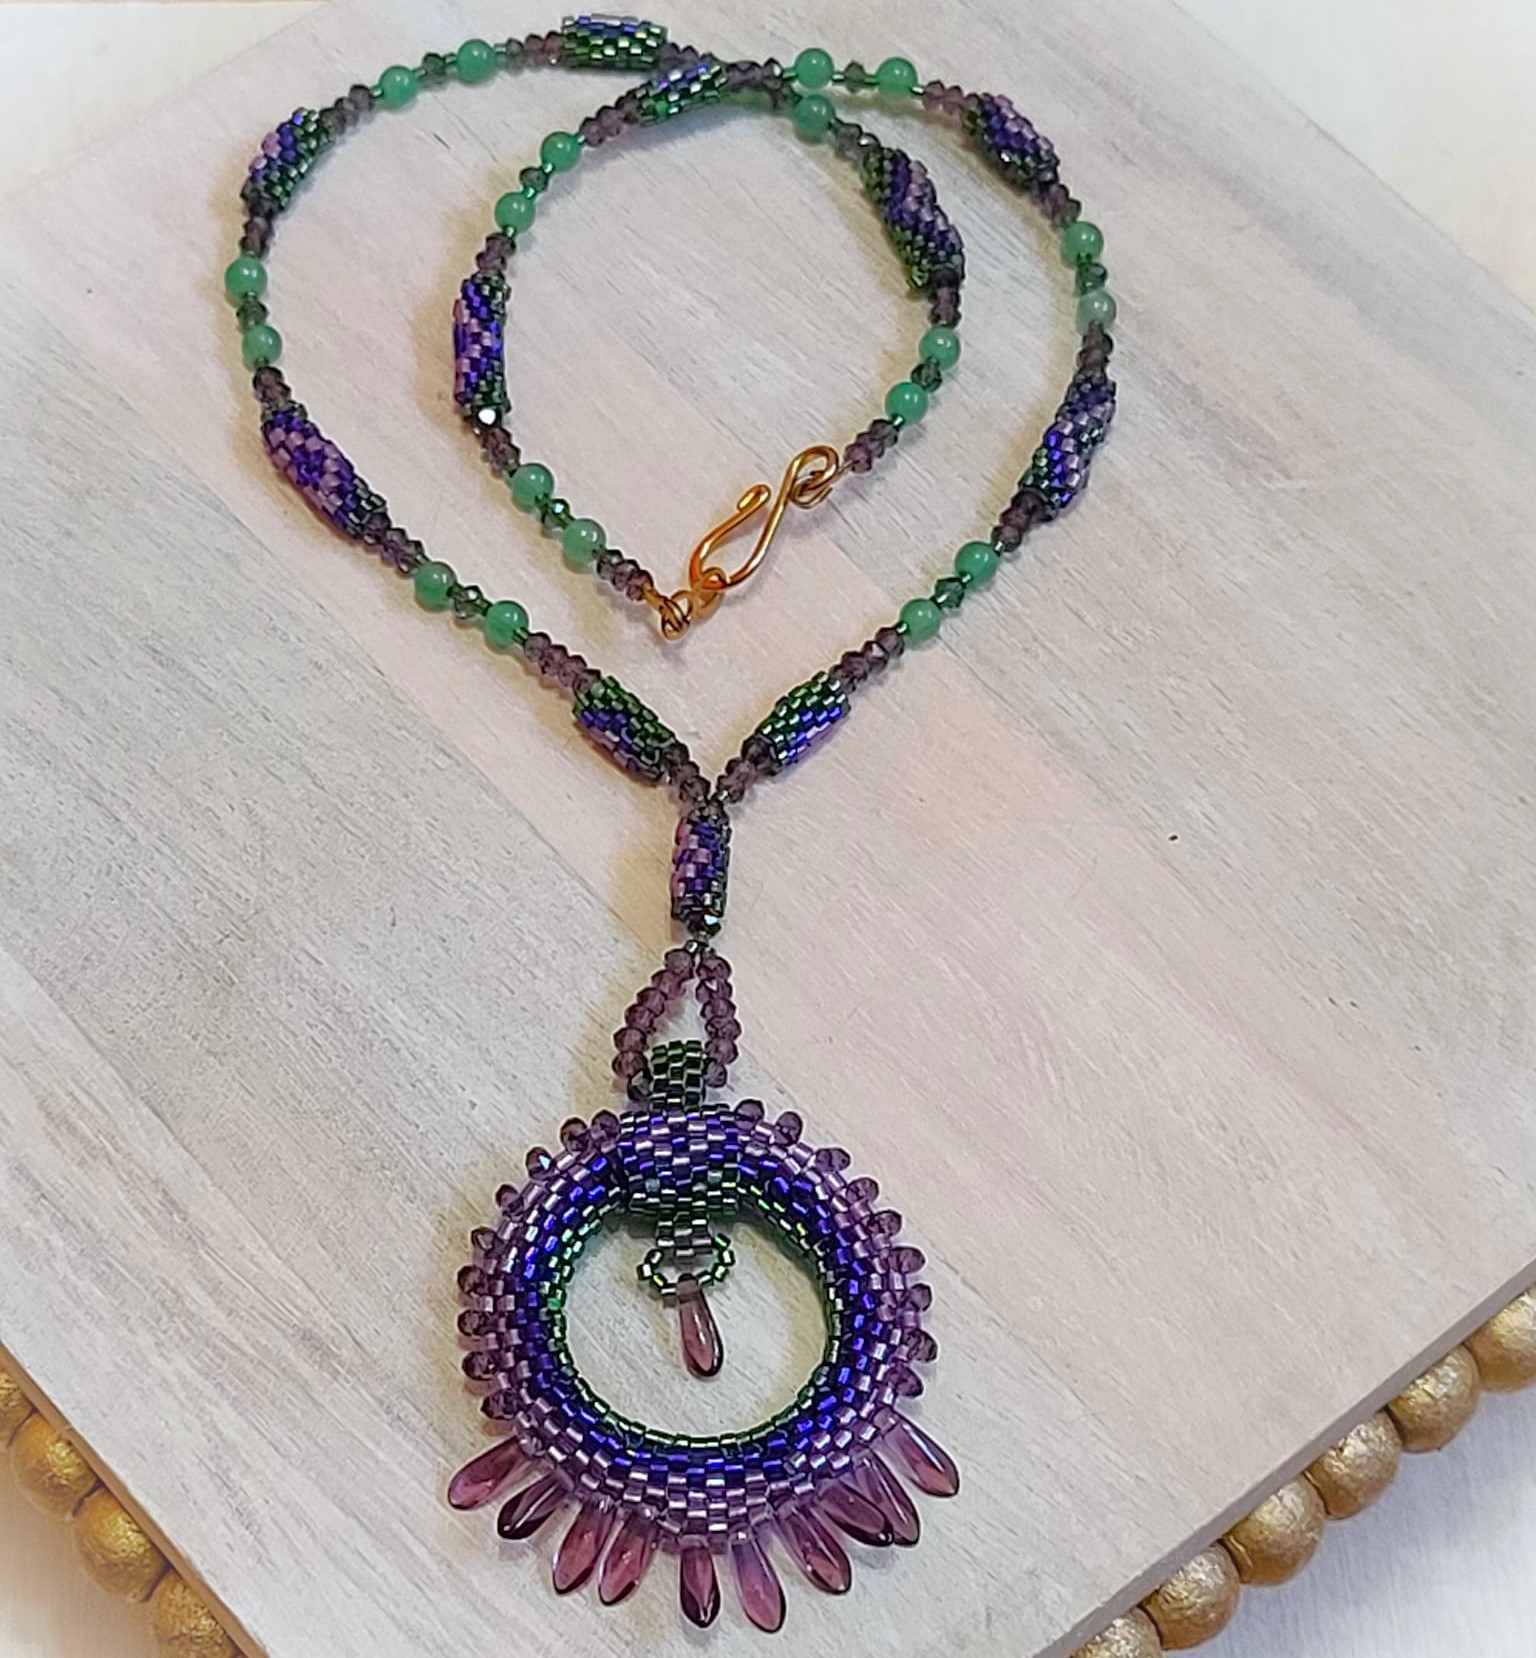 Beaded pendant necklace with fringe, circle pendant, jade gems